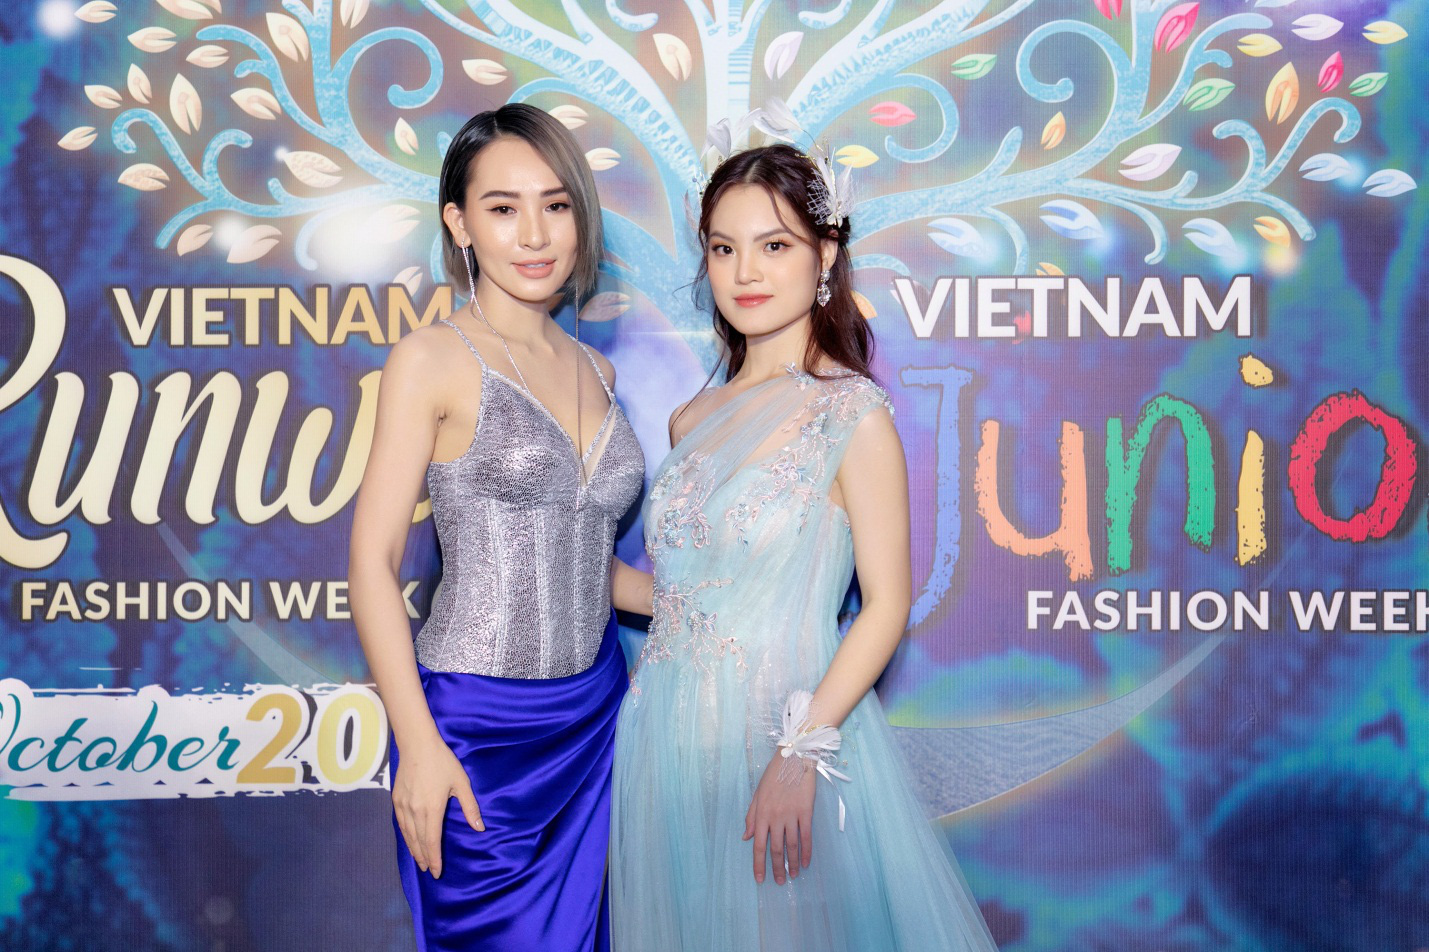 Sunny Đan Ngọc gây bất ngờ với màn catwalk xuất thần tại Vietnam Runway Fashion Week 2020 - Ảnh 5.